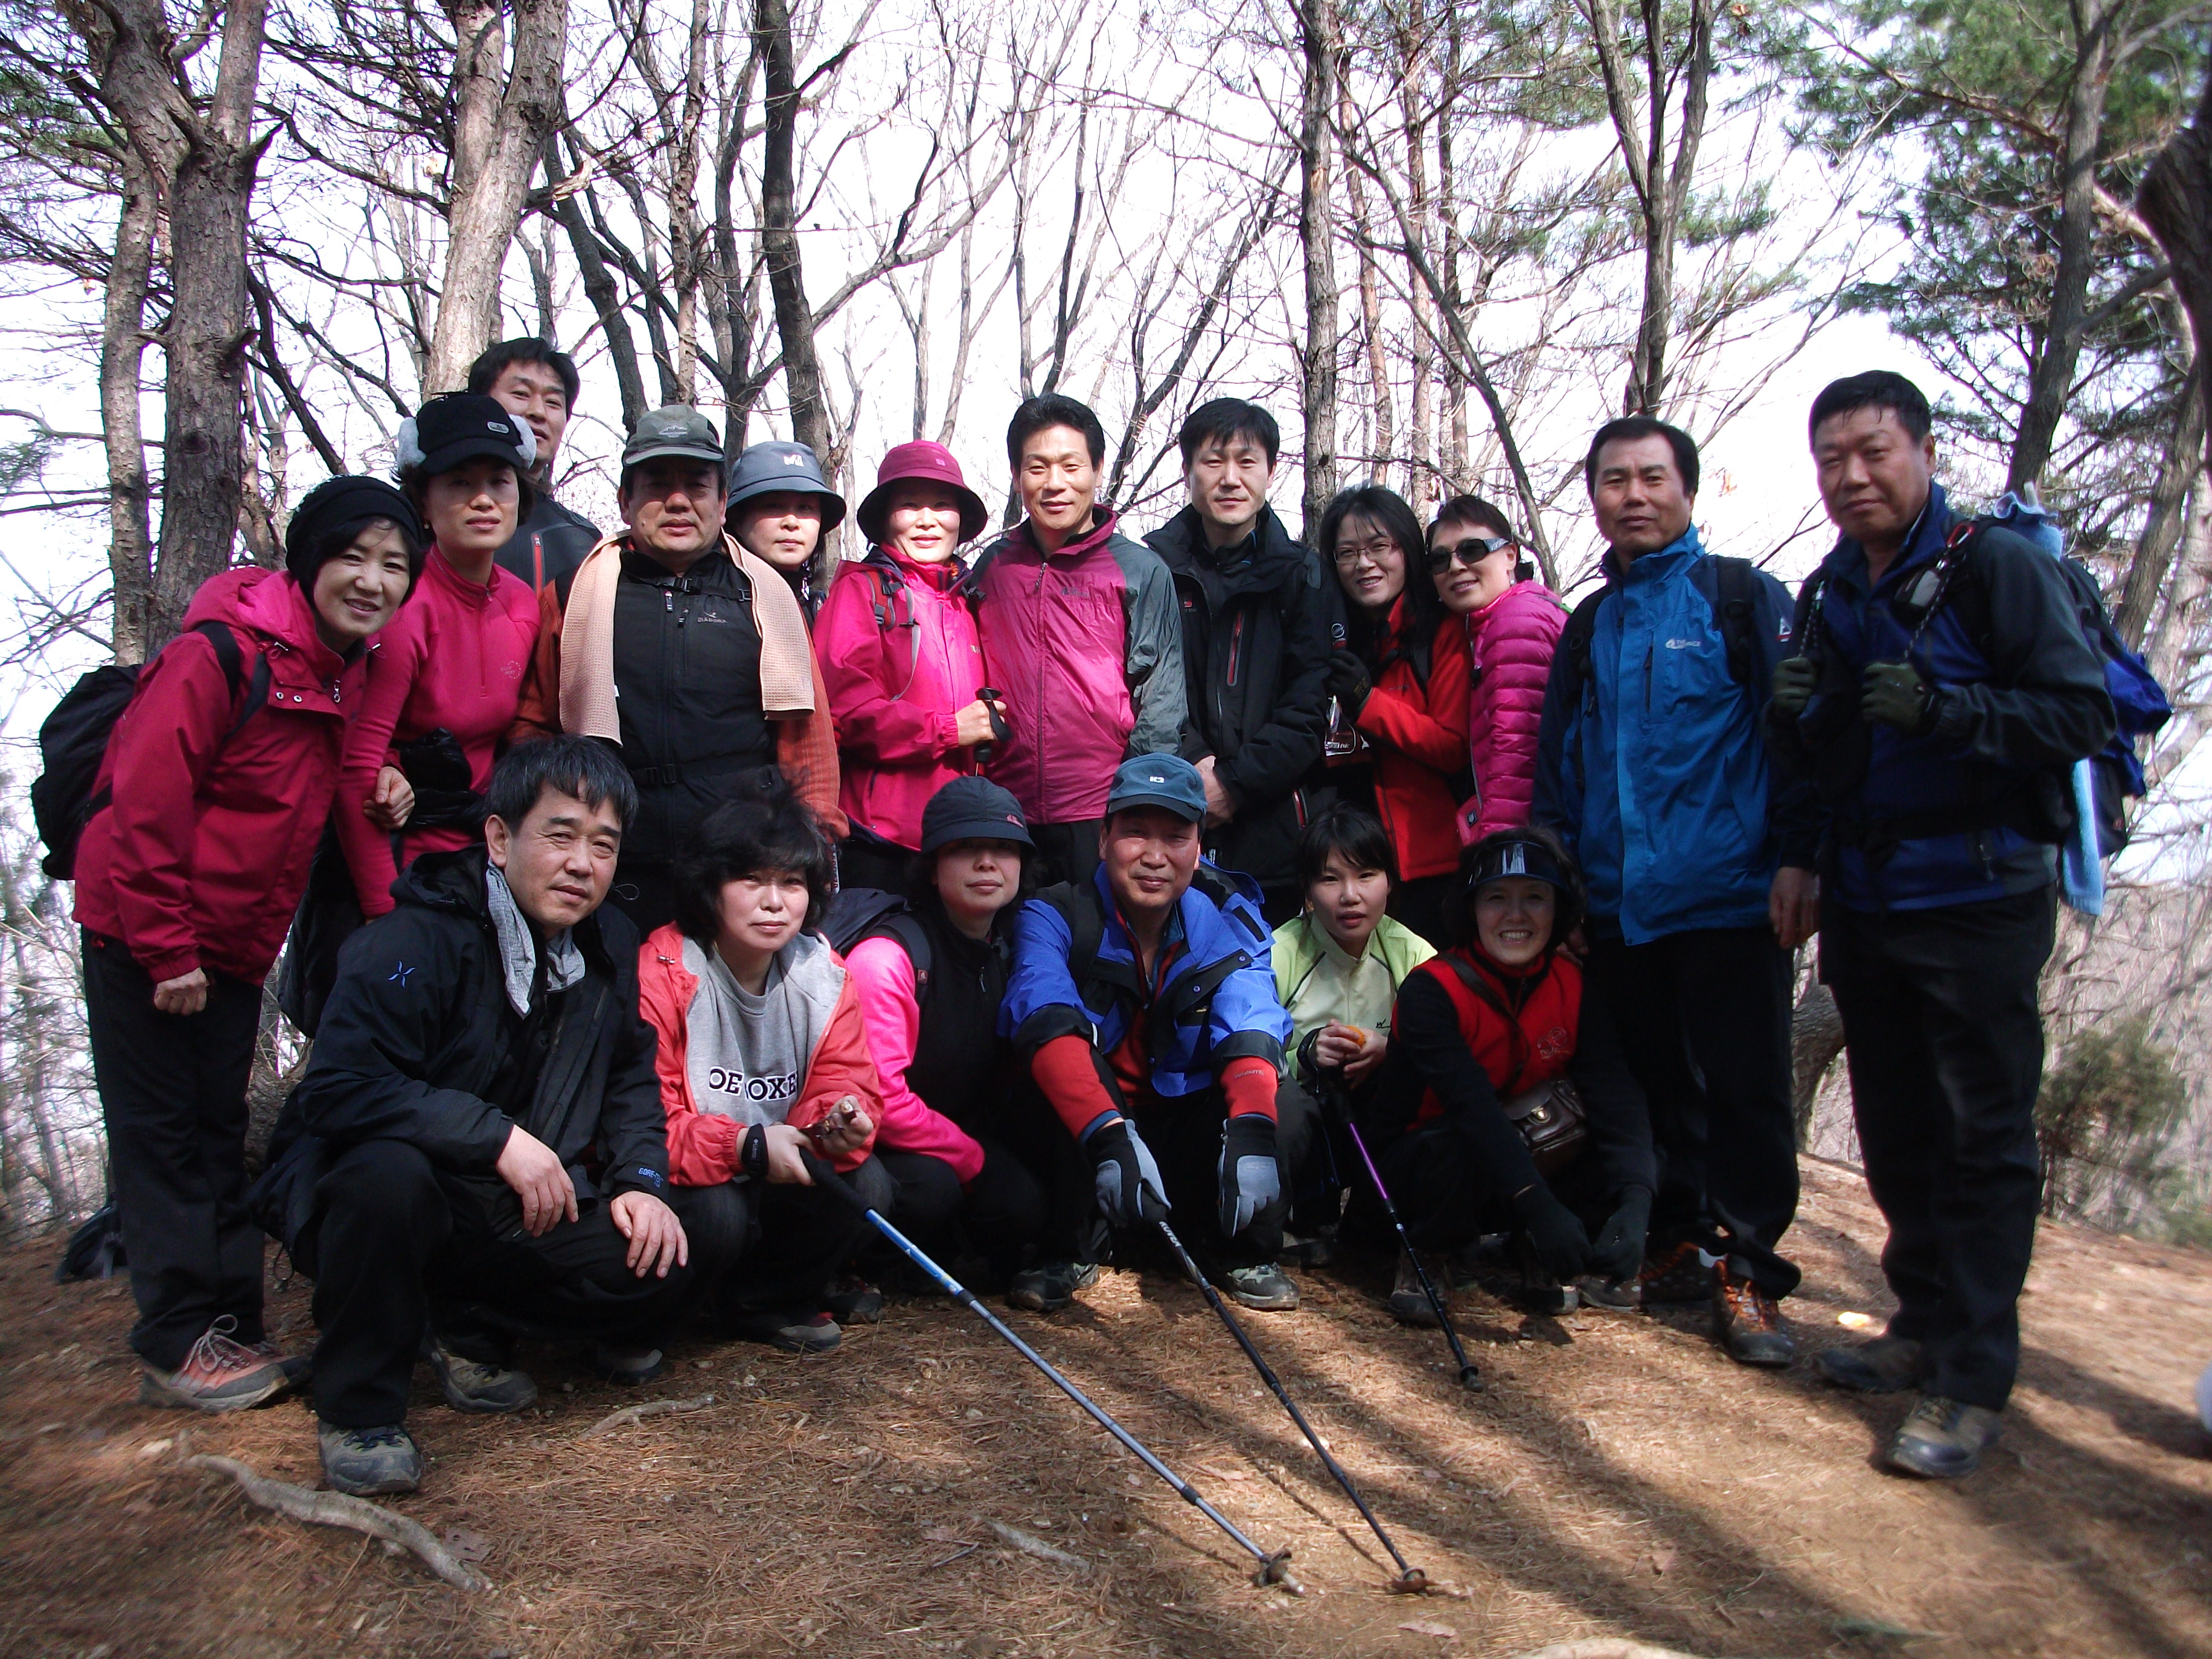 통장님과 함께 남한산성 워크숍(2010.2.27) 20100416jpg09333501.jpg